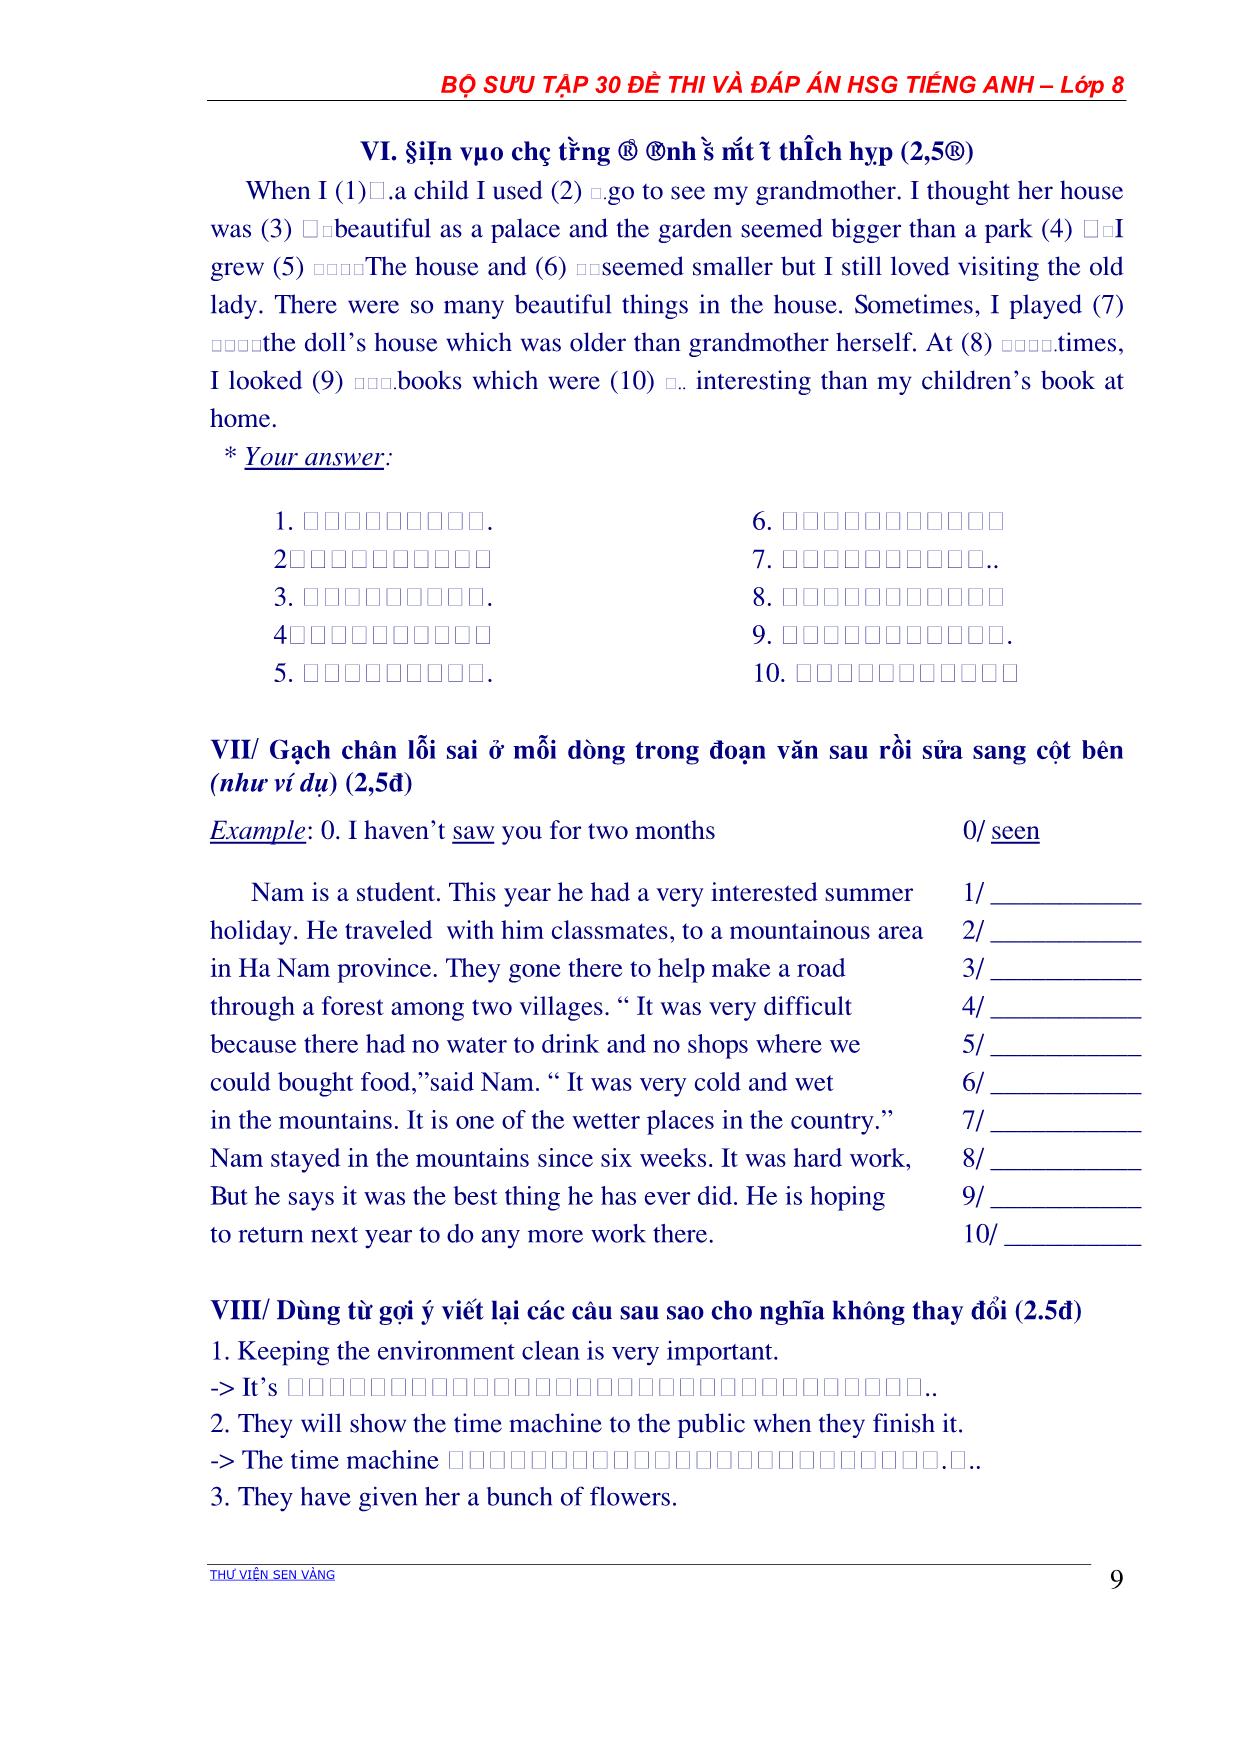 Bộ sưu tập 30 Đề thi học sinh giỏi môn Tiếng Anh Lớp 8 các năm học (Có đáp án) trang 9